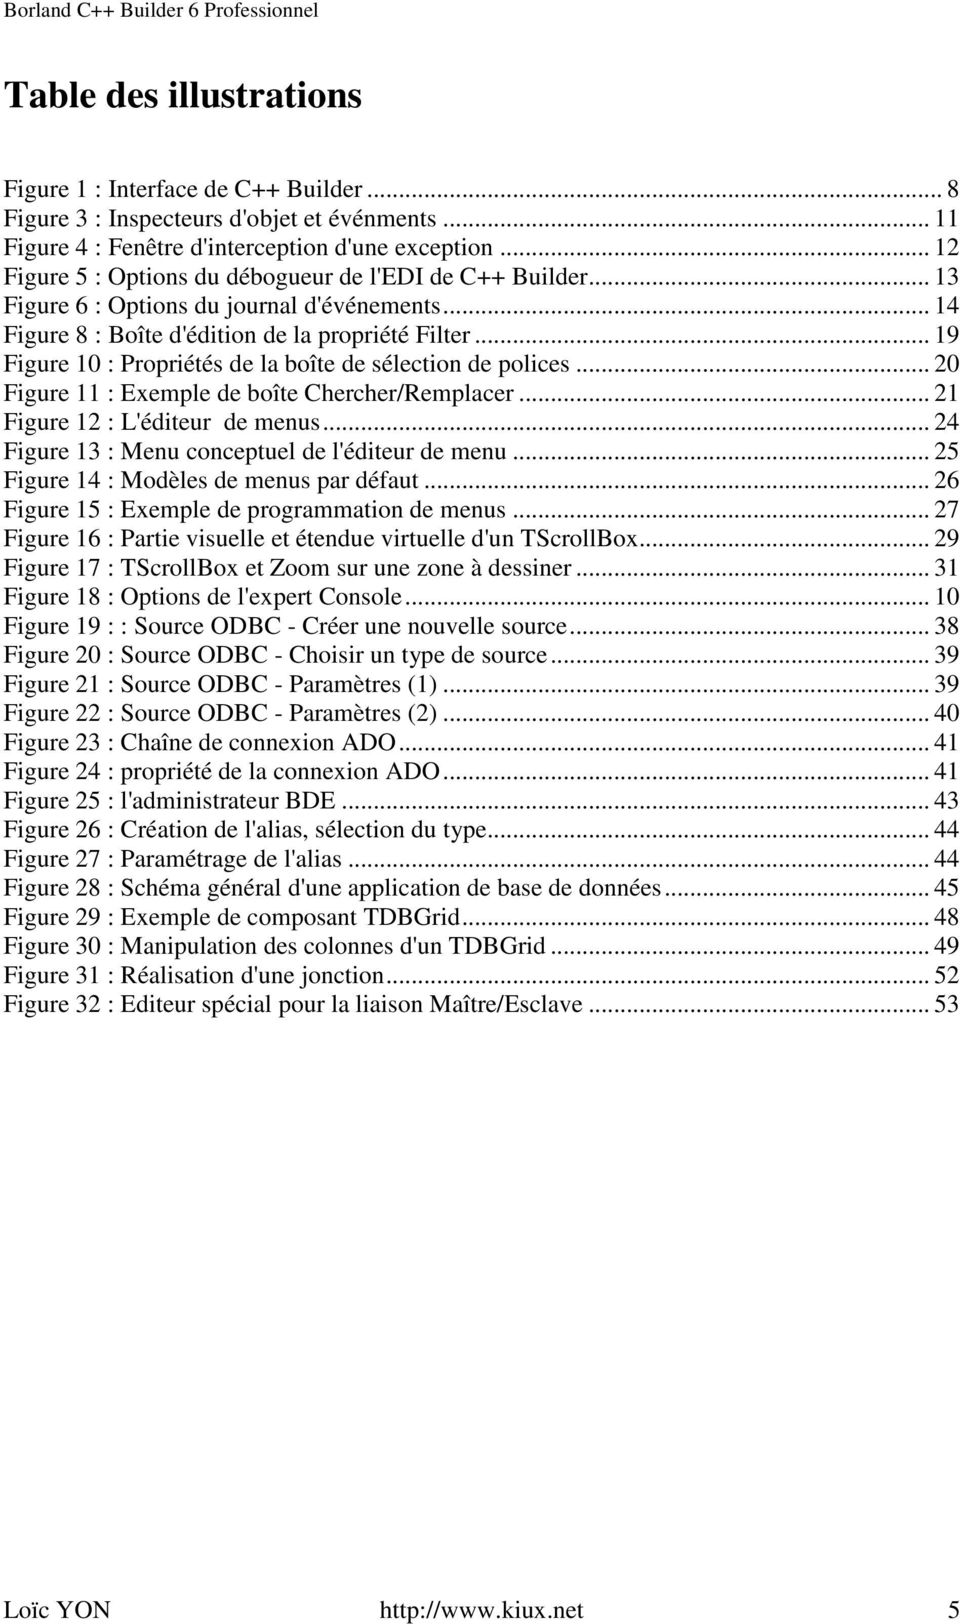 .. 19 Figure 10 : Propriétés de la boîte de sélection de polices... 20 Figure 11 : Exemple de boîte Chercher/Remplacer... 21 Figure 12 : L'éditeur de menus.